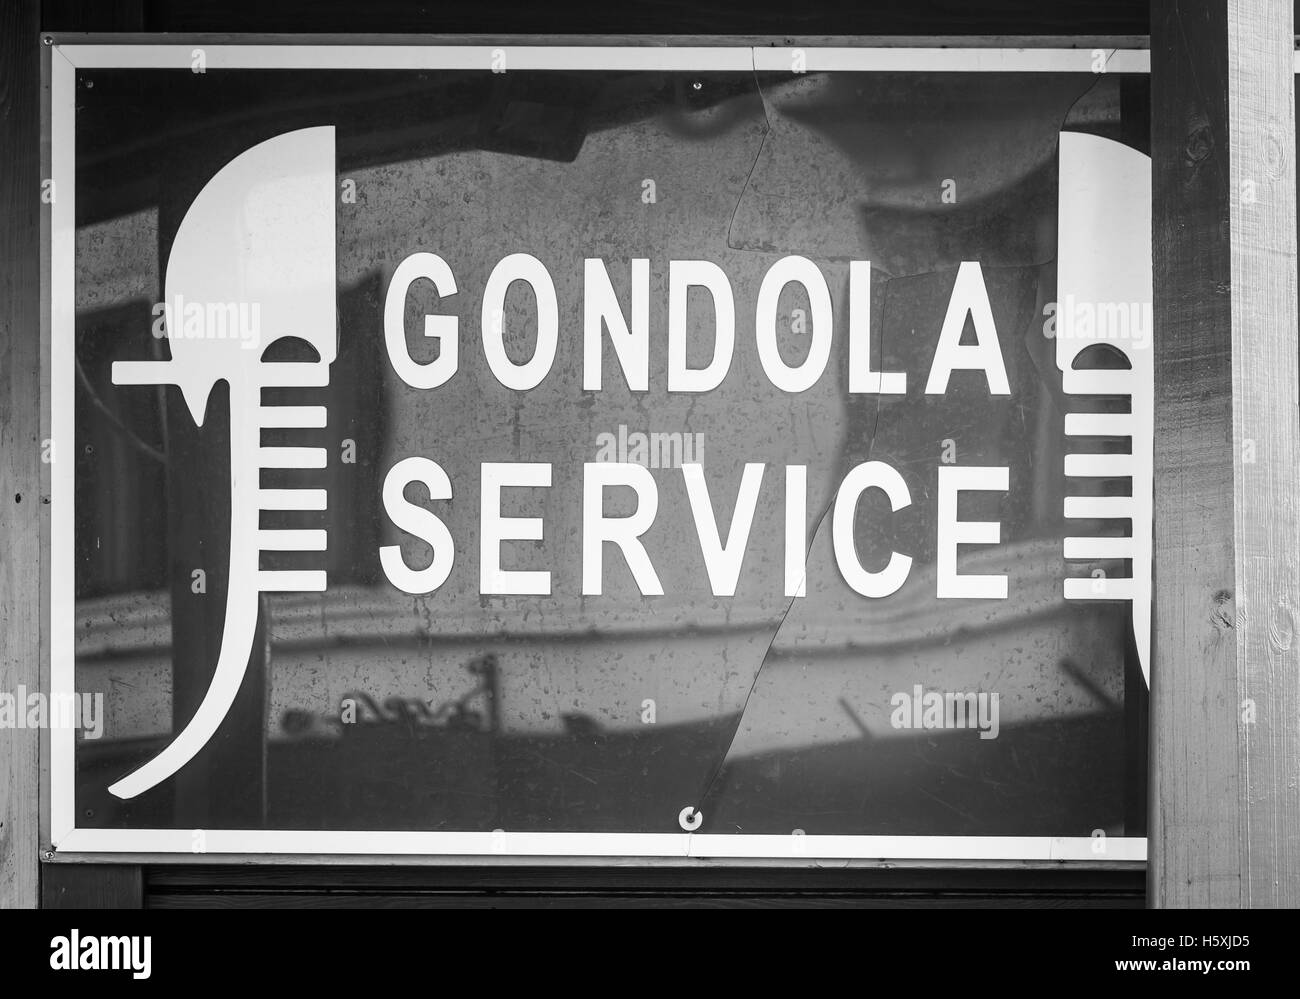 Célèbre monument de service gondole à Venise - signe générique, pas de marque déposée Banque D'Images